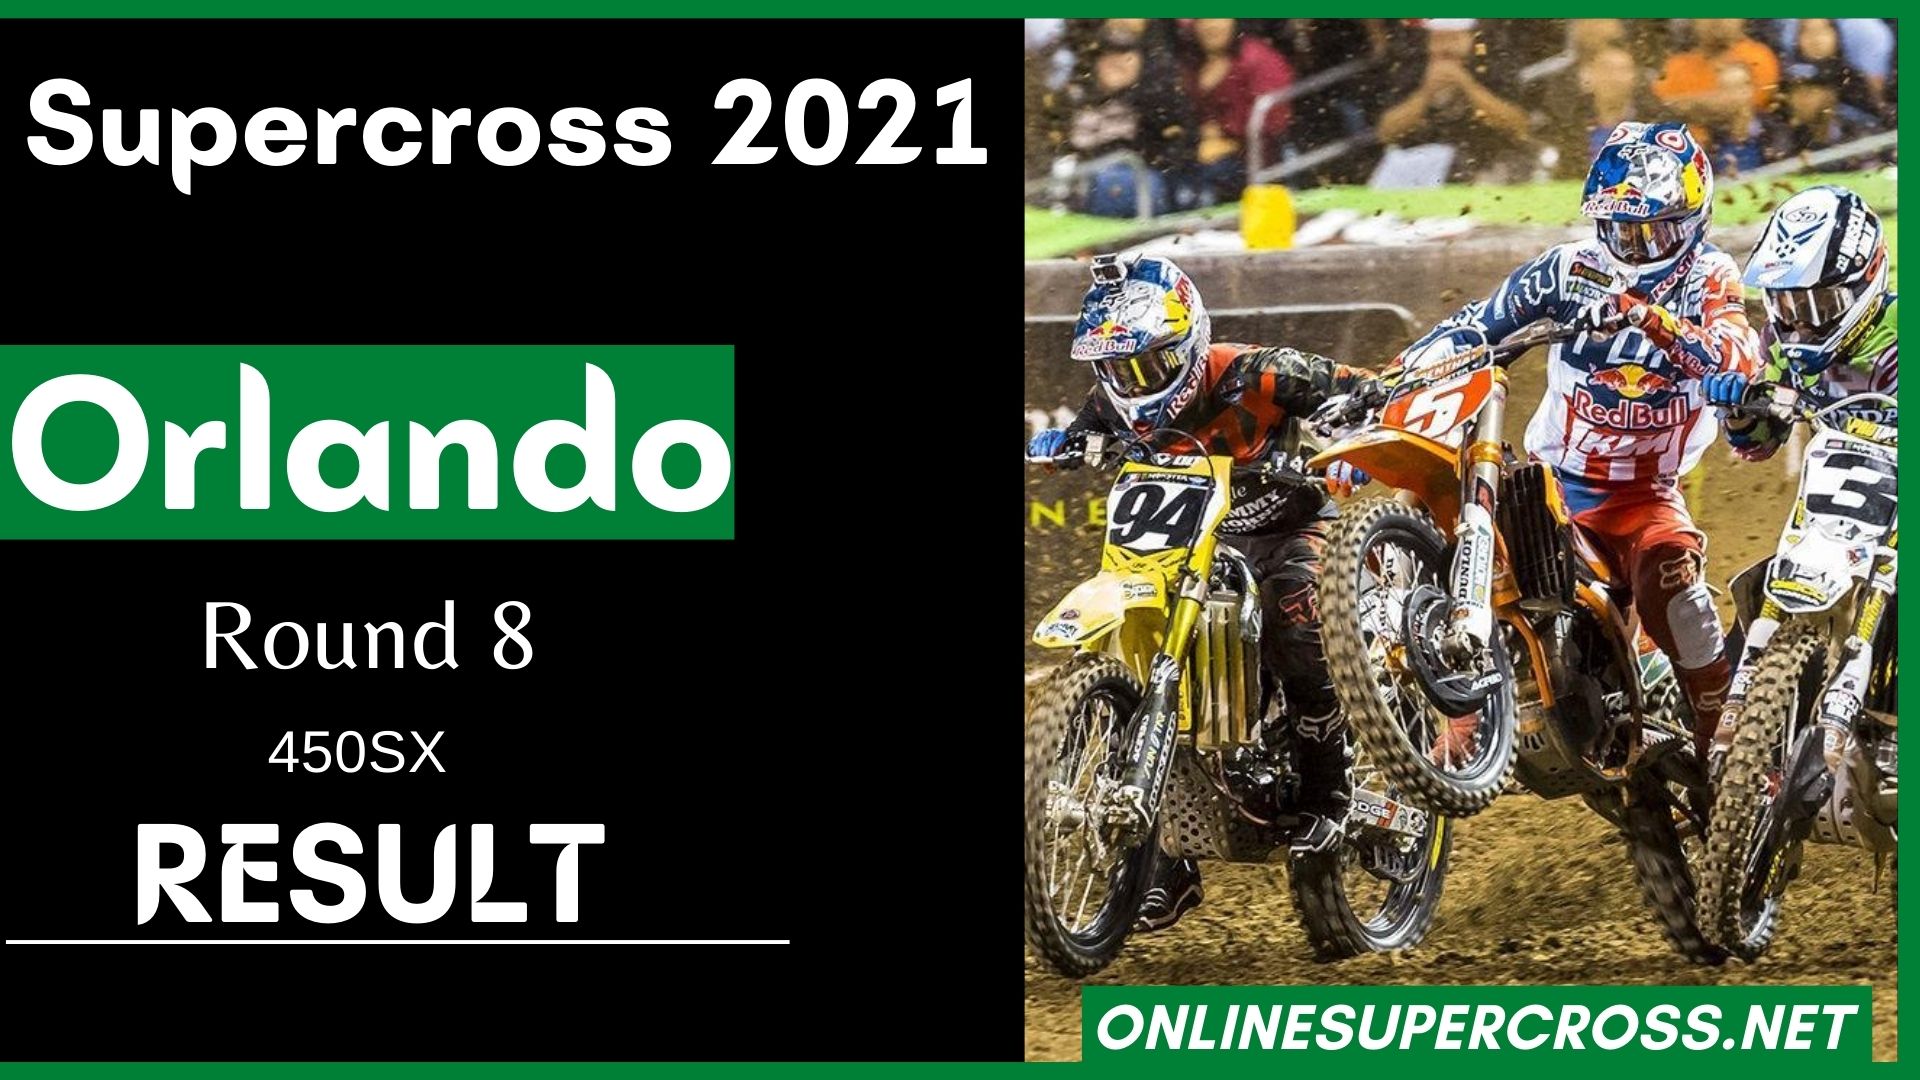 Orlando Round 8 Supercross 450SX Result 2021